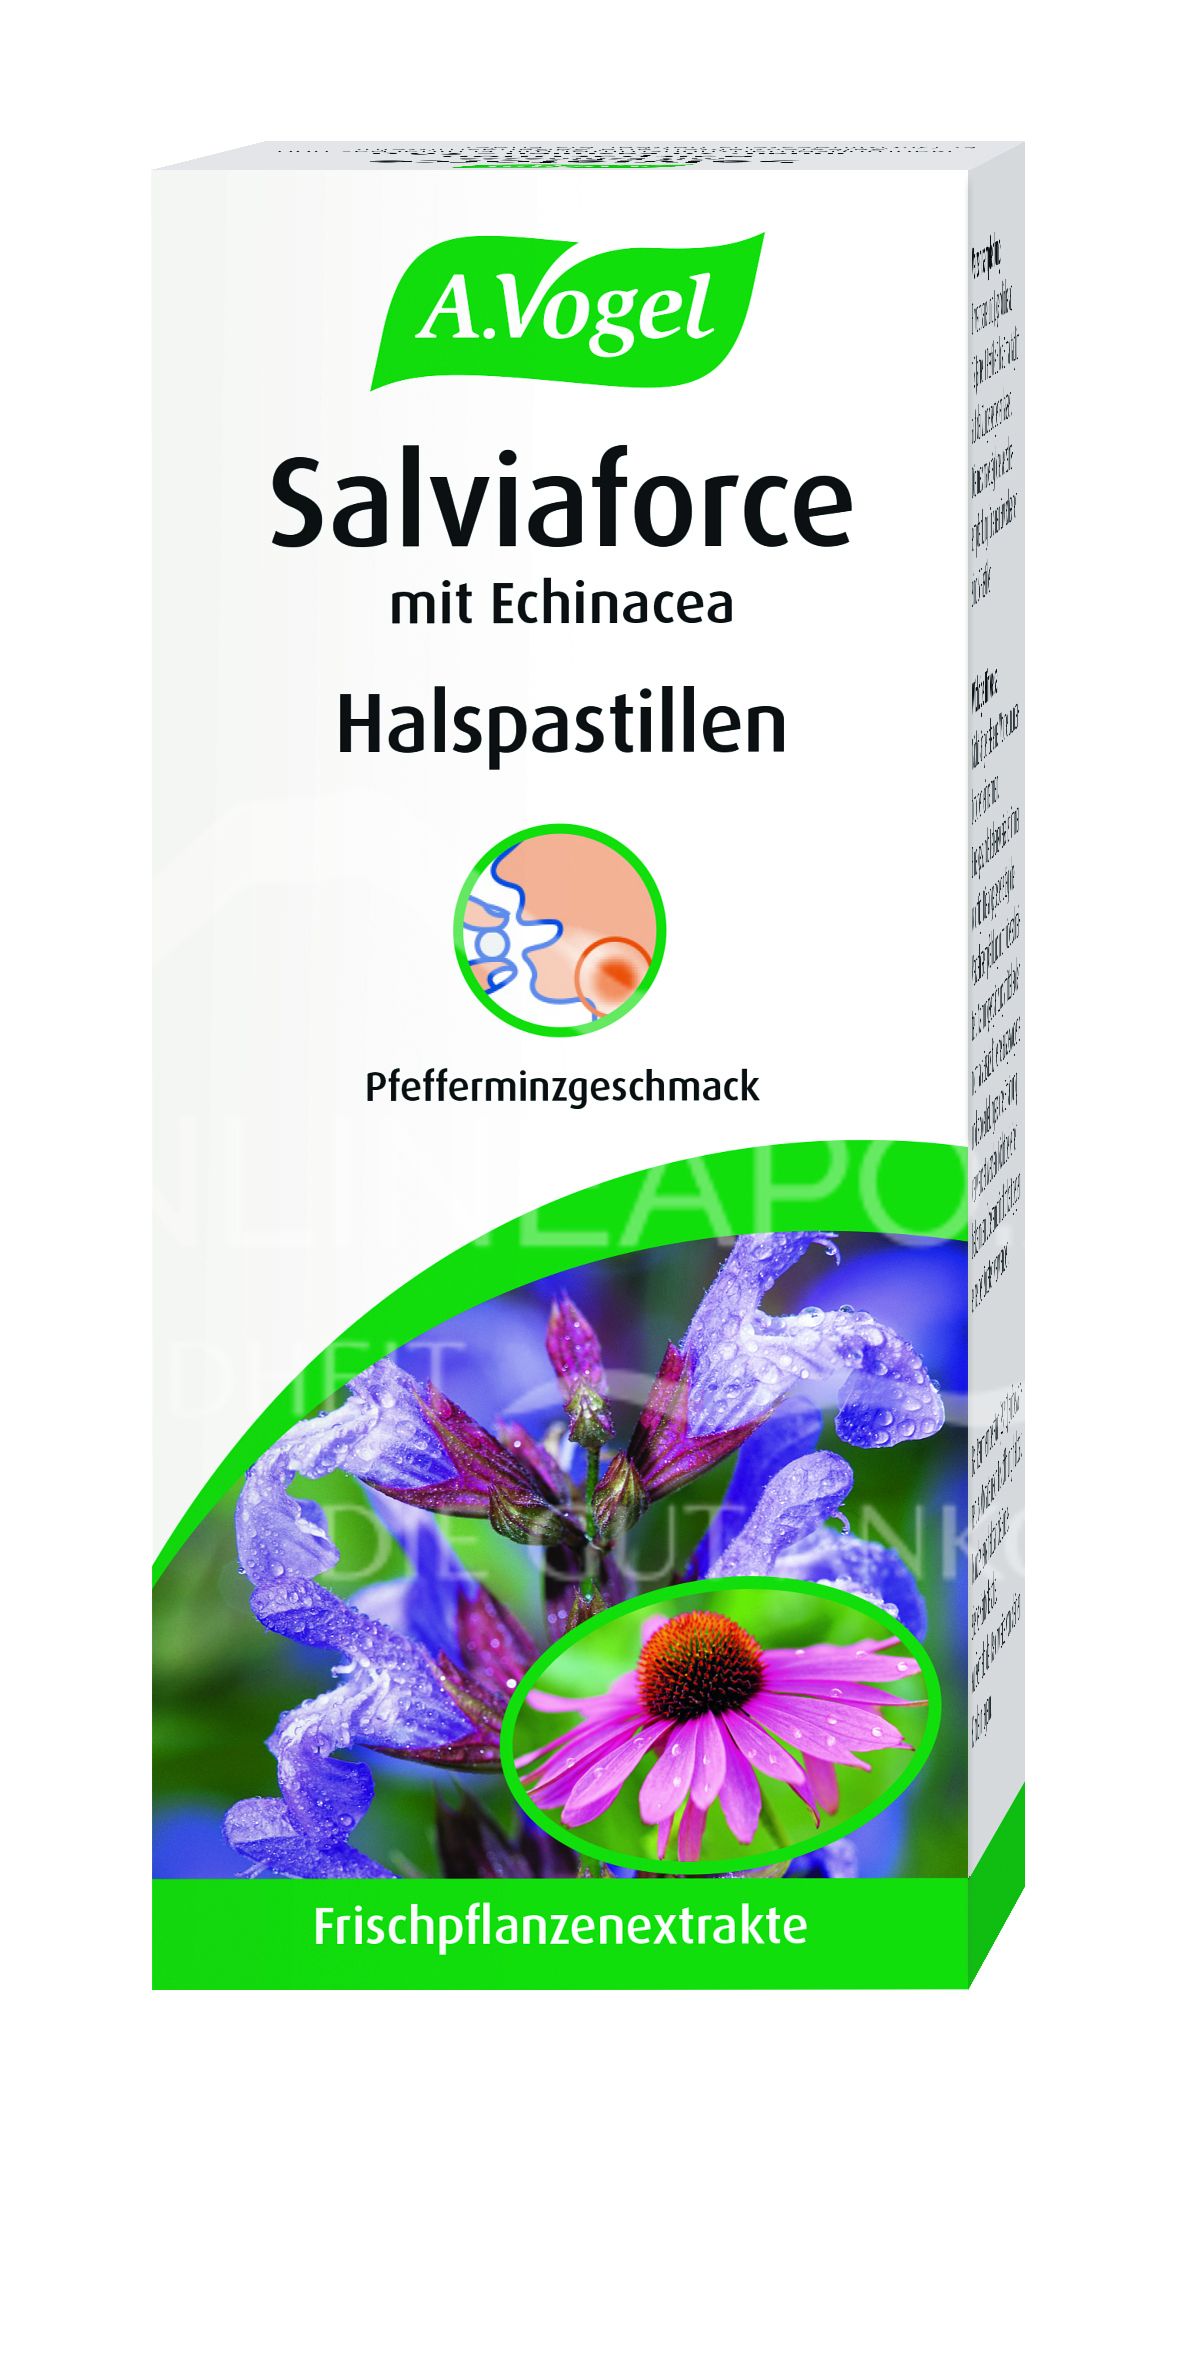 A.Vogel Salviaforce mit Echinacea Halspastillen